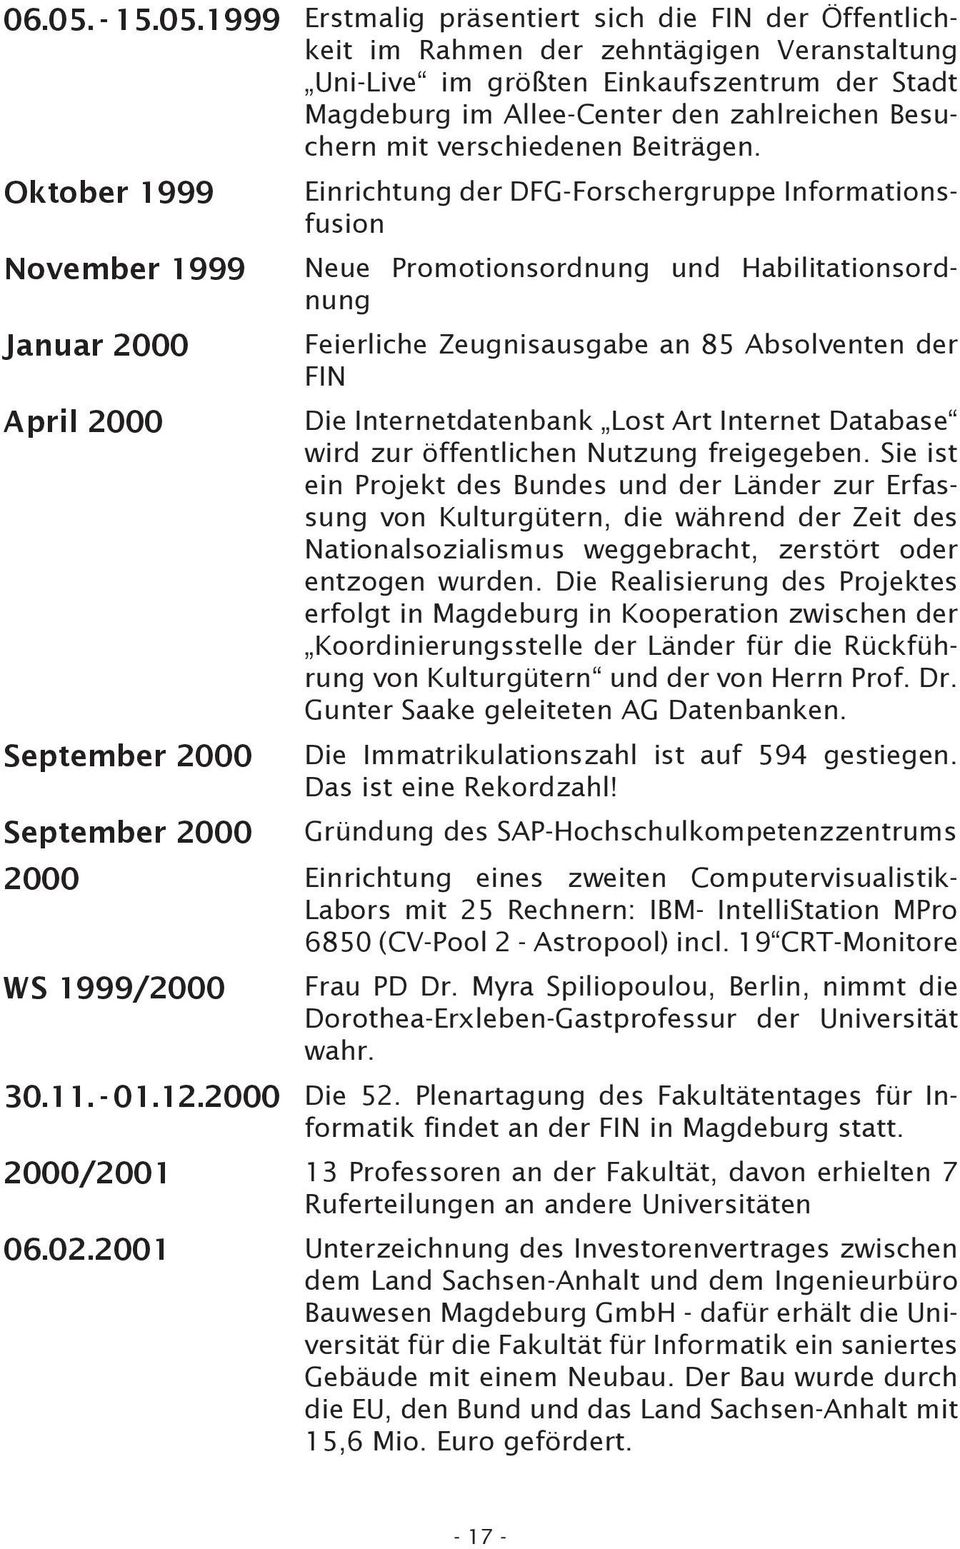 1999 Erstmalig präsentiert sich die FIN der Öffentlichkeit im Rahmen der zehntägigen Veranstaltung Uni-Live im größten Einkaufszentrum der Stadt Magdeburg im Allee-Center den zahlreichen Besuchern